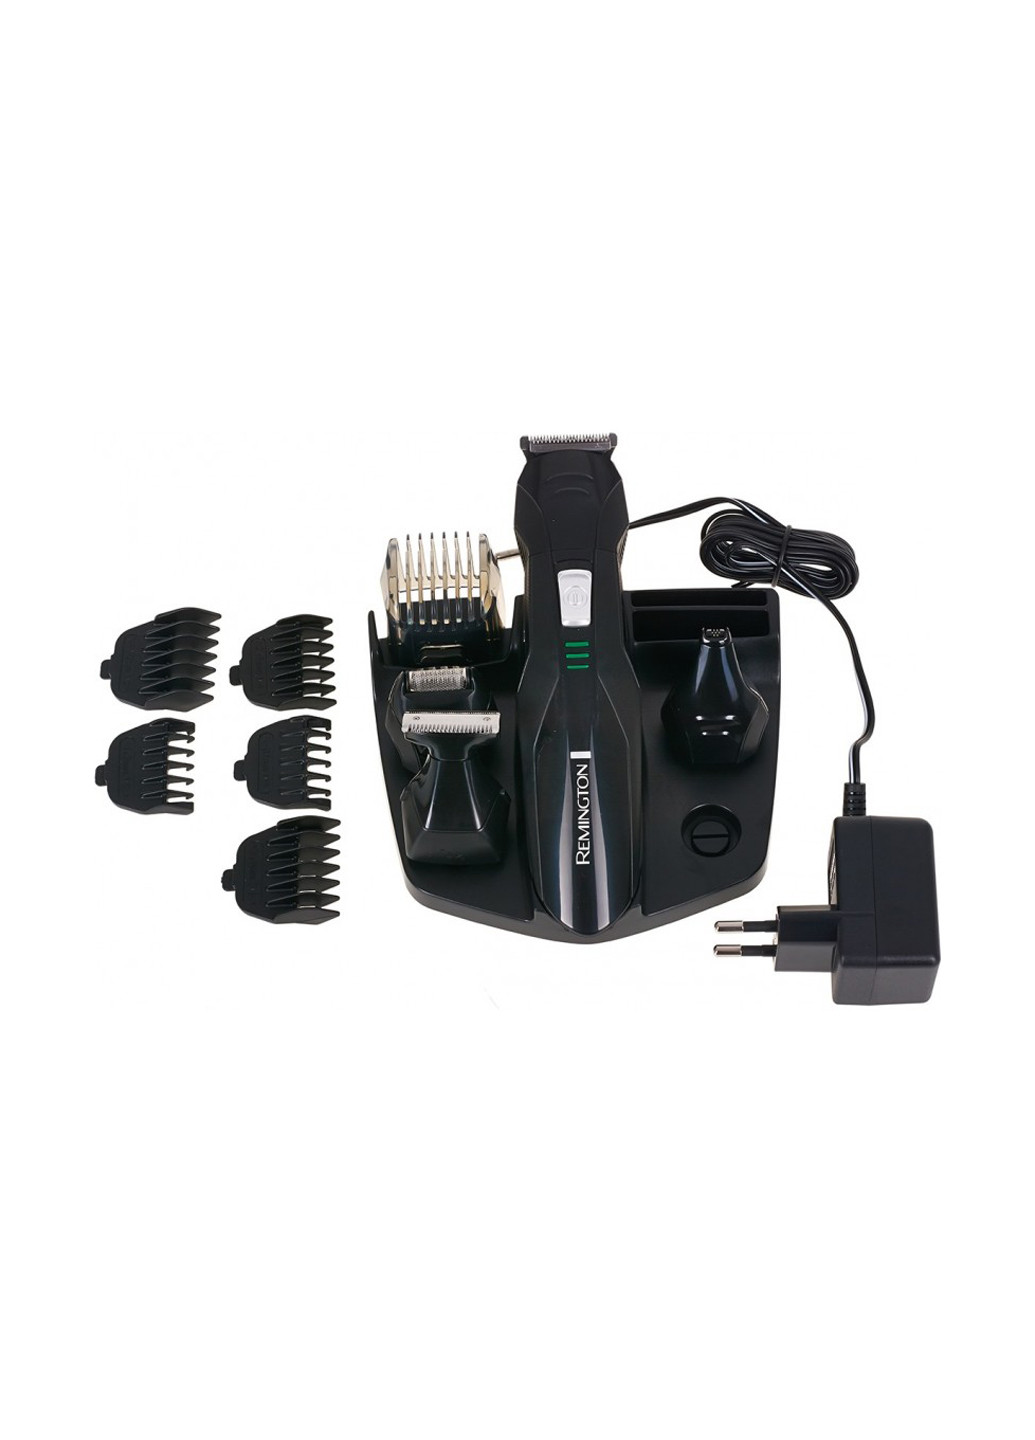 Машинка для стрижки Grooming Kit Remington PG6030 чёрные